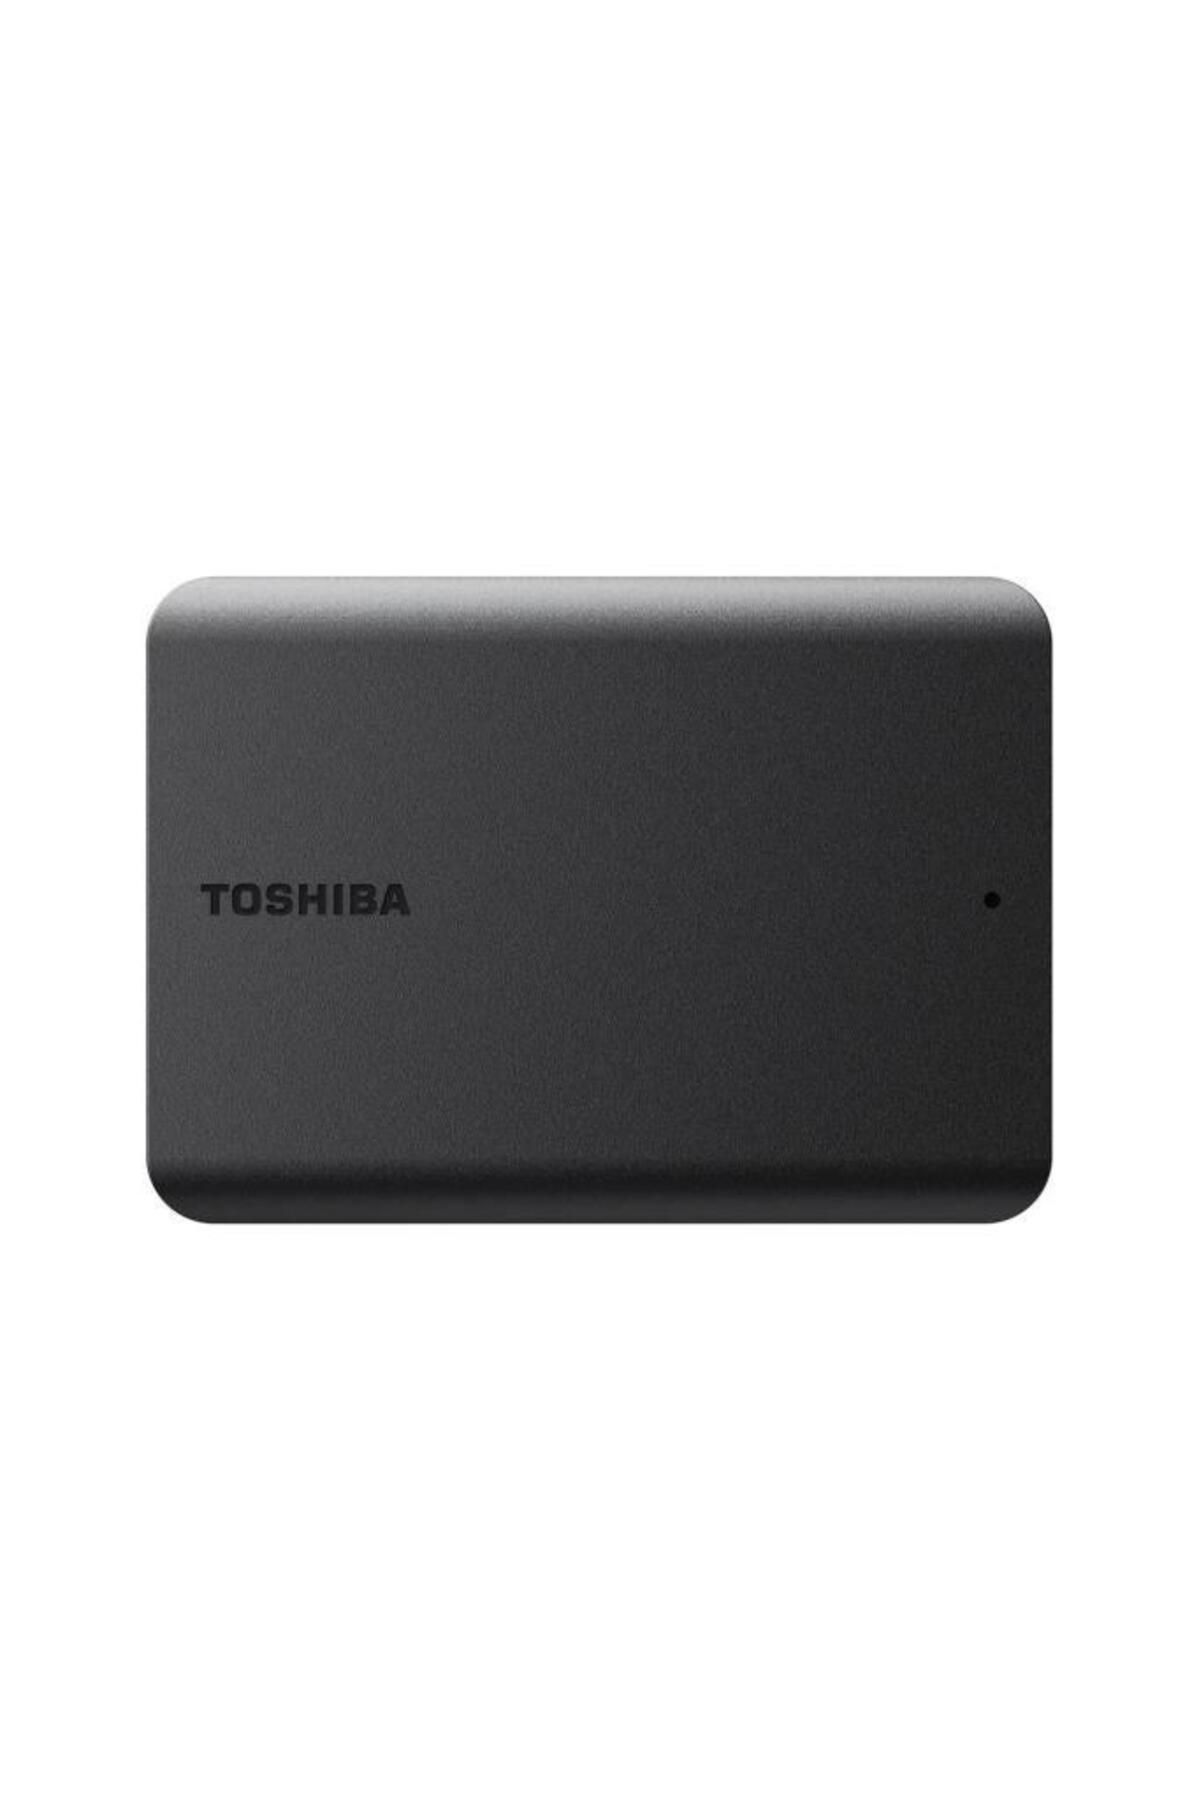 Toshiba Canvio Basic 1 Tb Hdtb510ek3aa 2.5 Inç Usb 3.0 Taşınabilir Disk